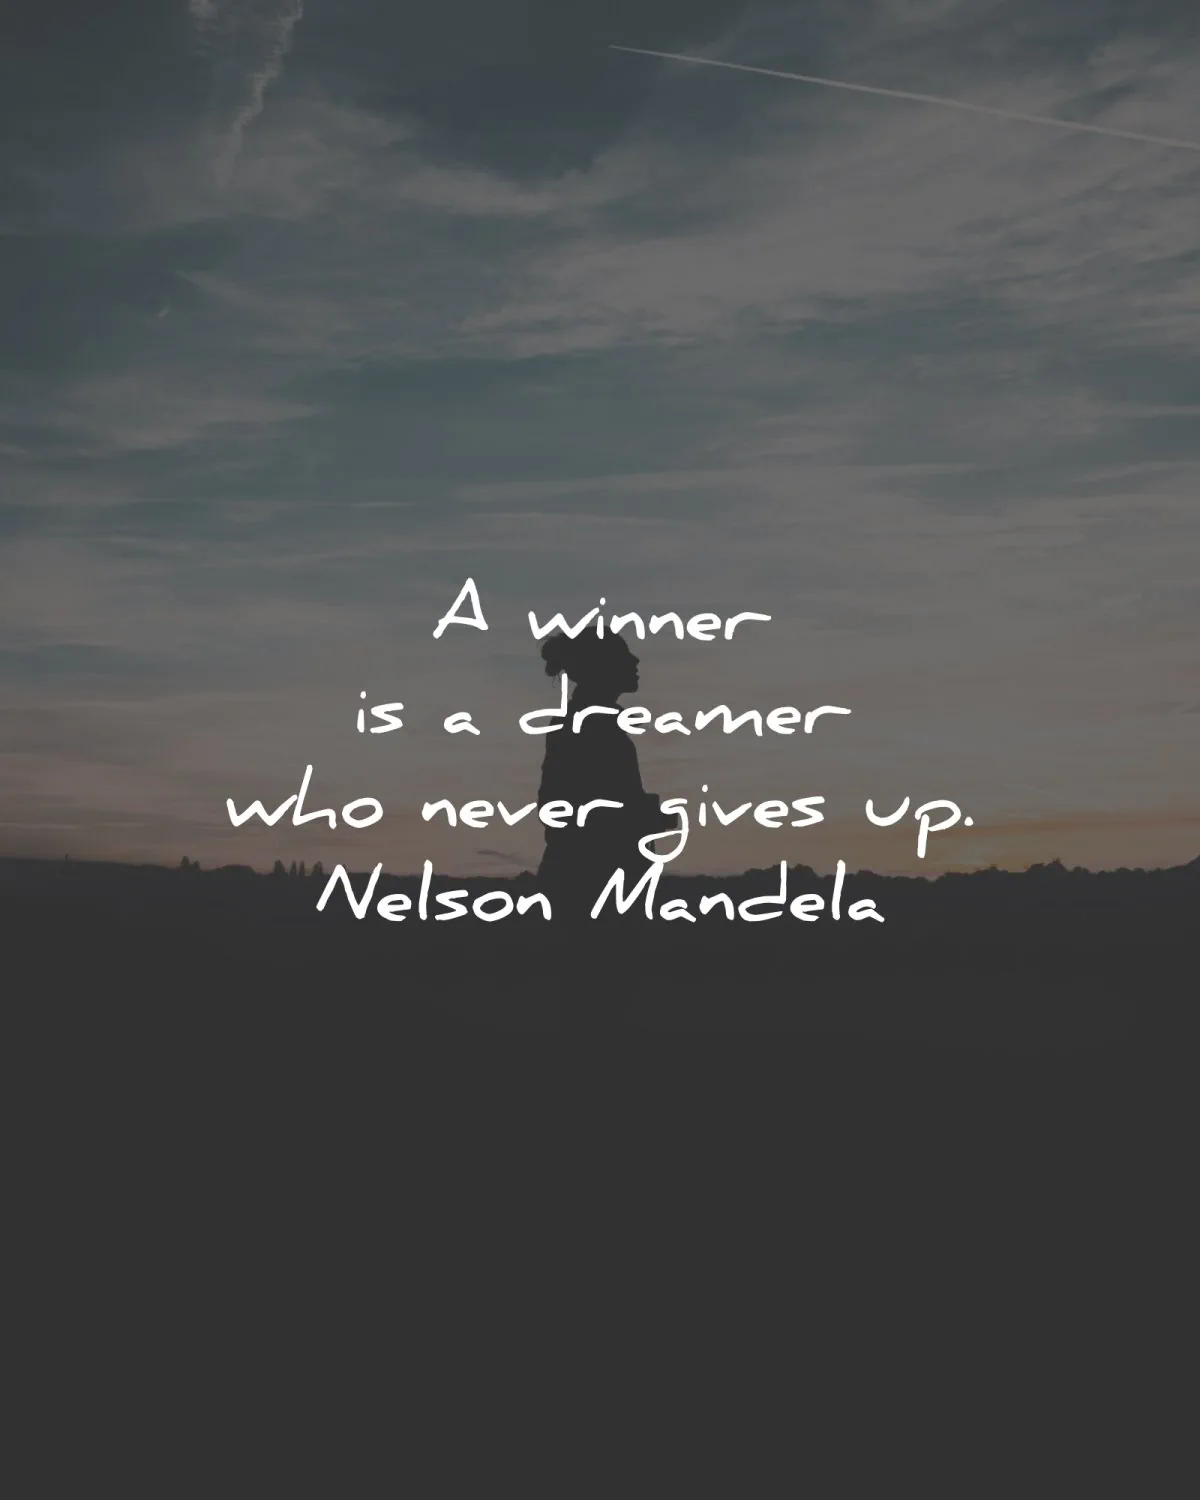 nelson mandela quotes winner dreamer never gives up wisdom